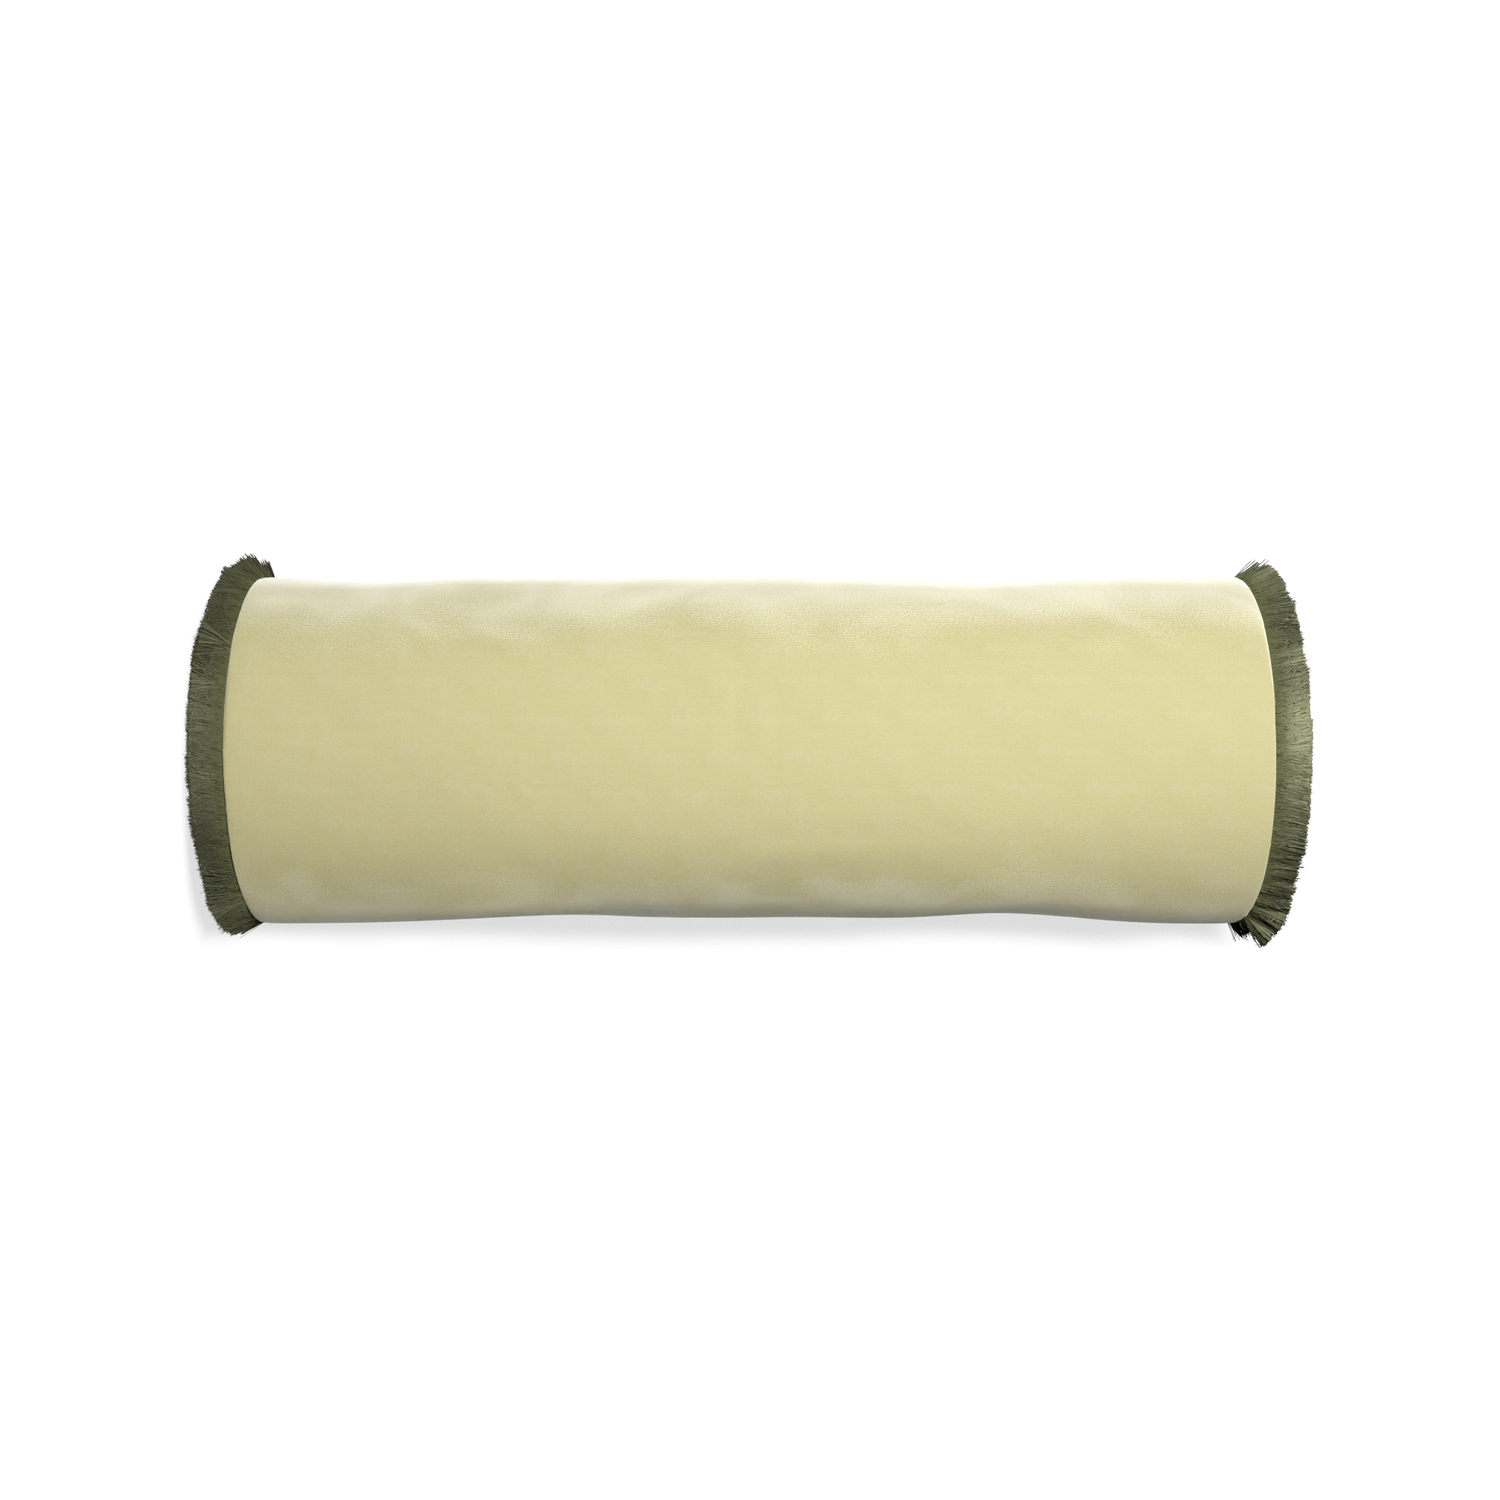 Bolster pear velvet custom pillow with sage fringe on white background